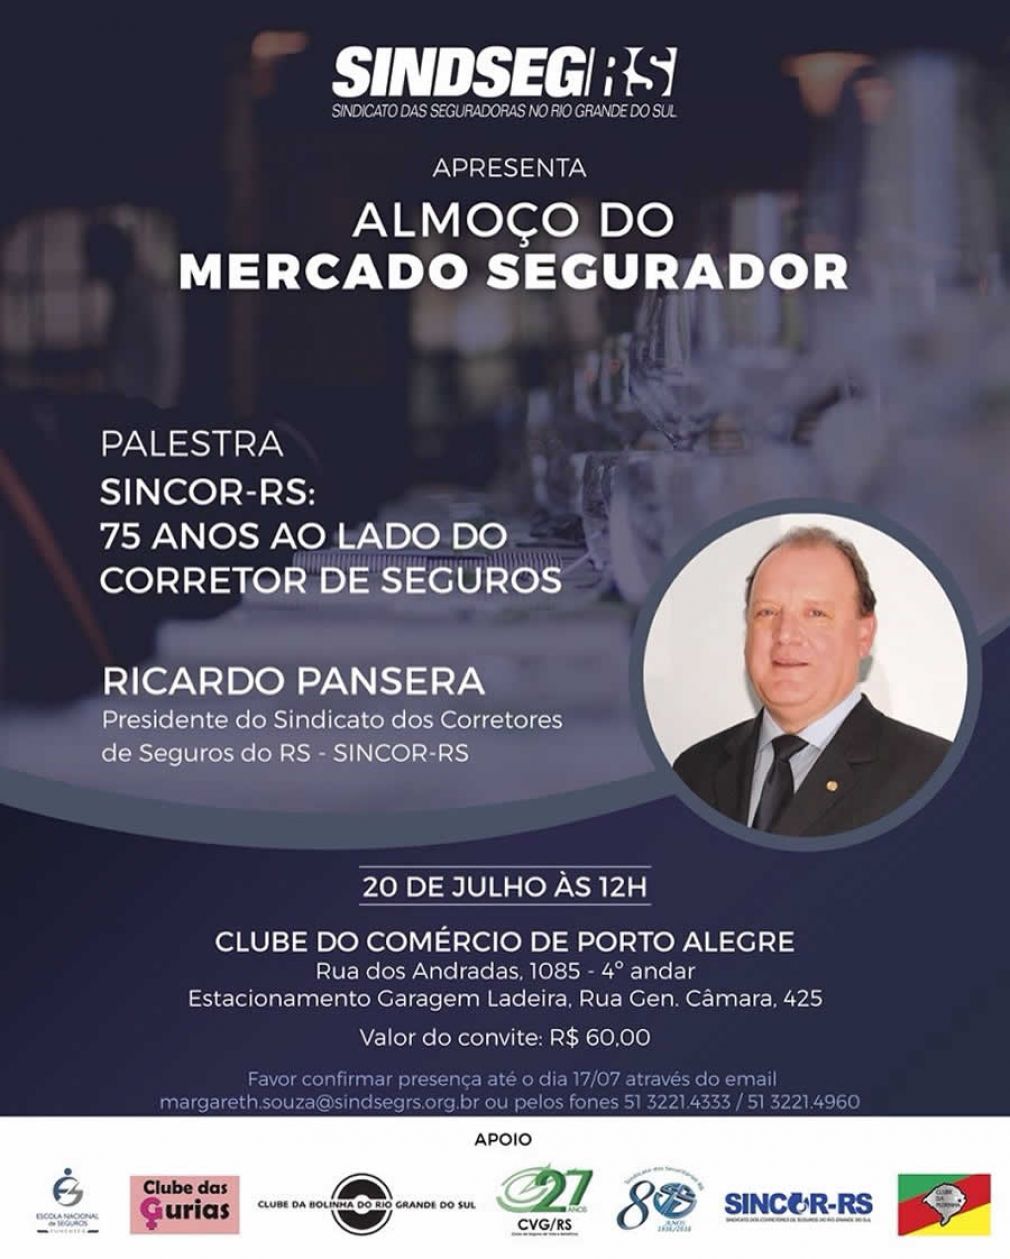 Almoço do Mercado Segurador abordará os 75 anos do Sincor-RS